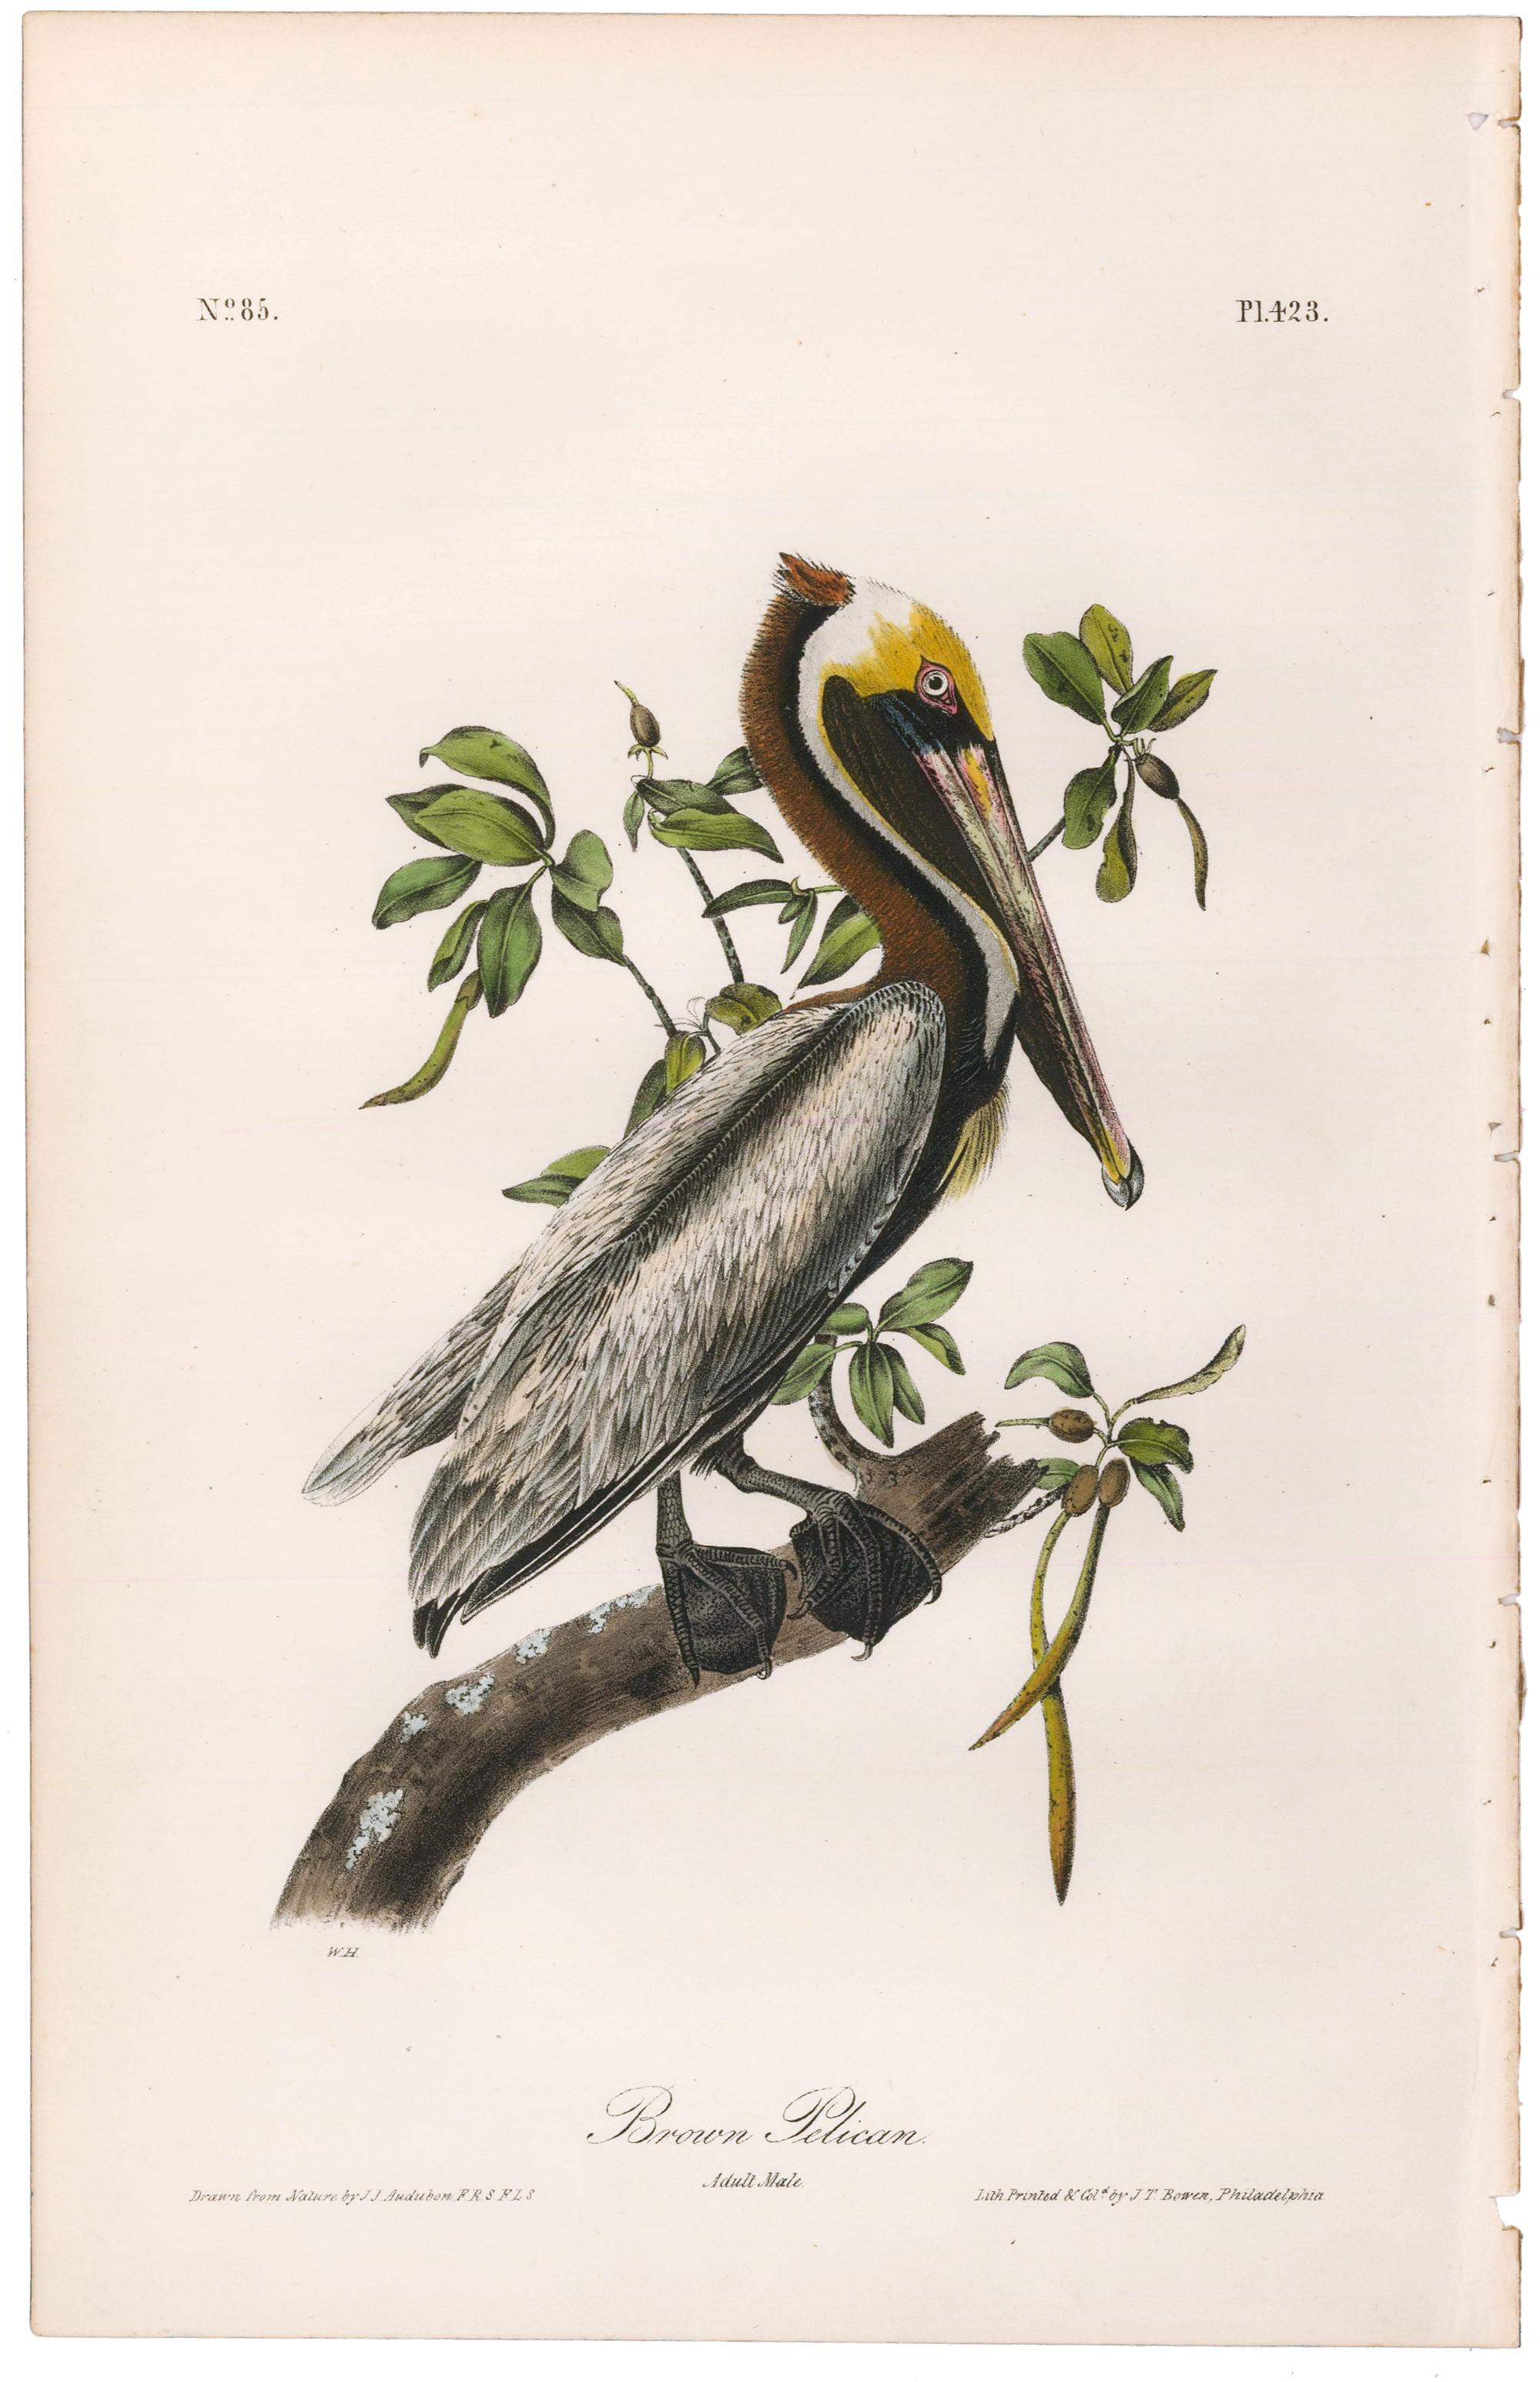 Brown Pelican. - Print by John James Audubon